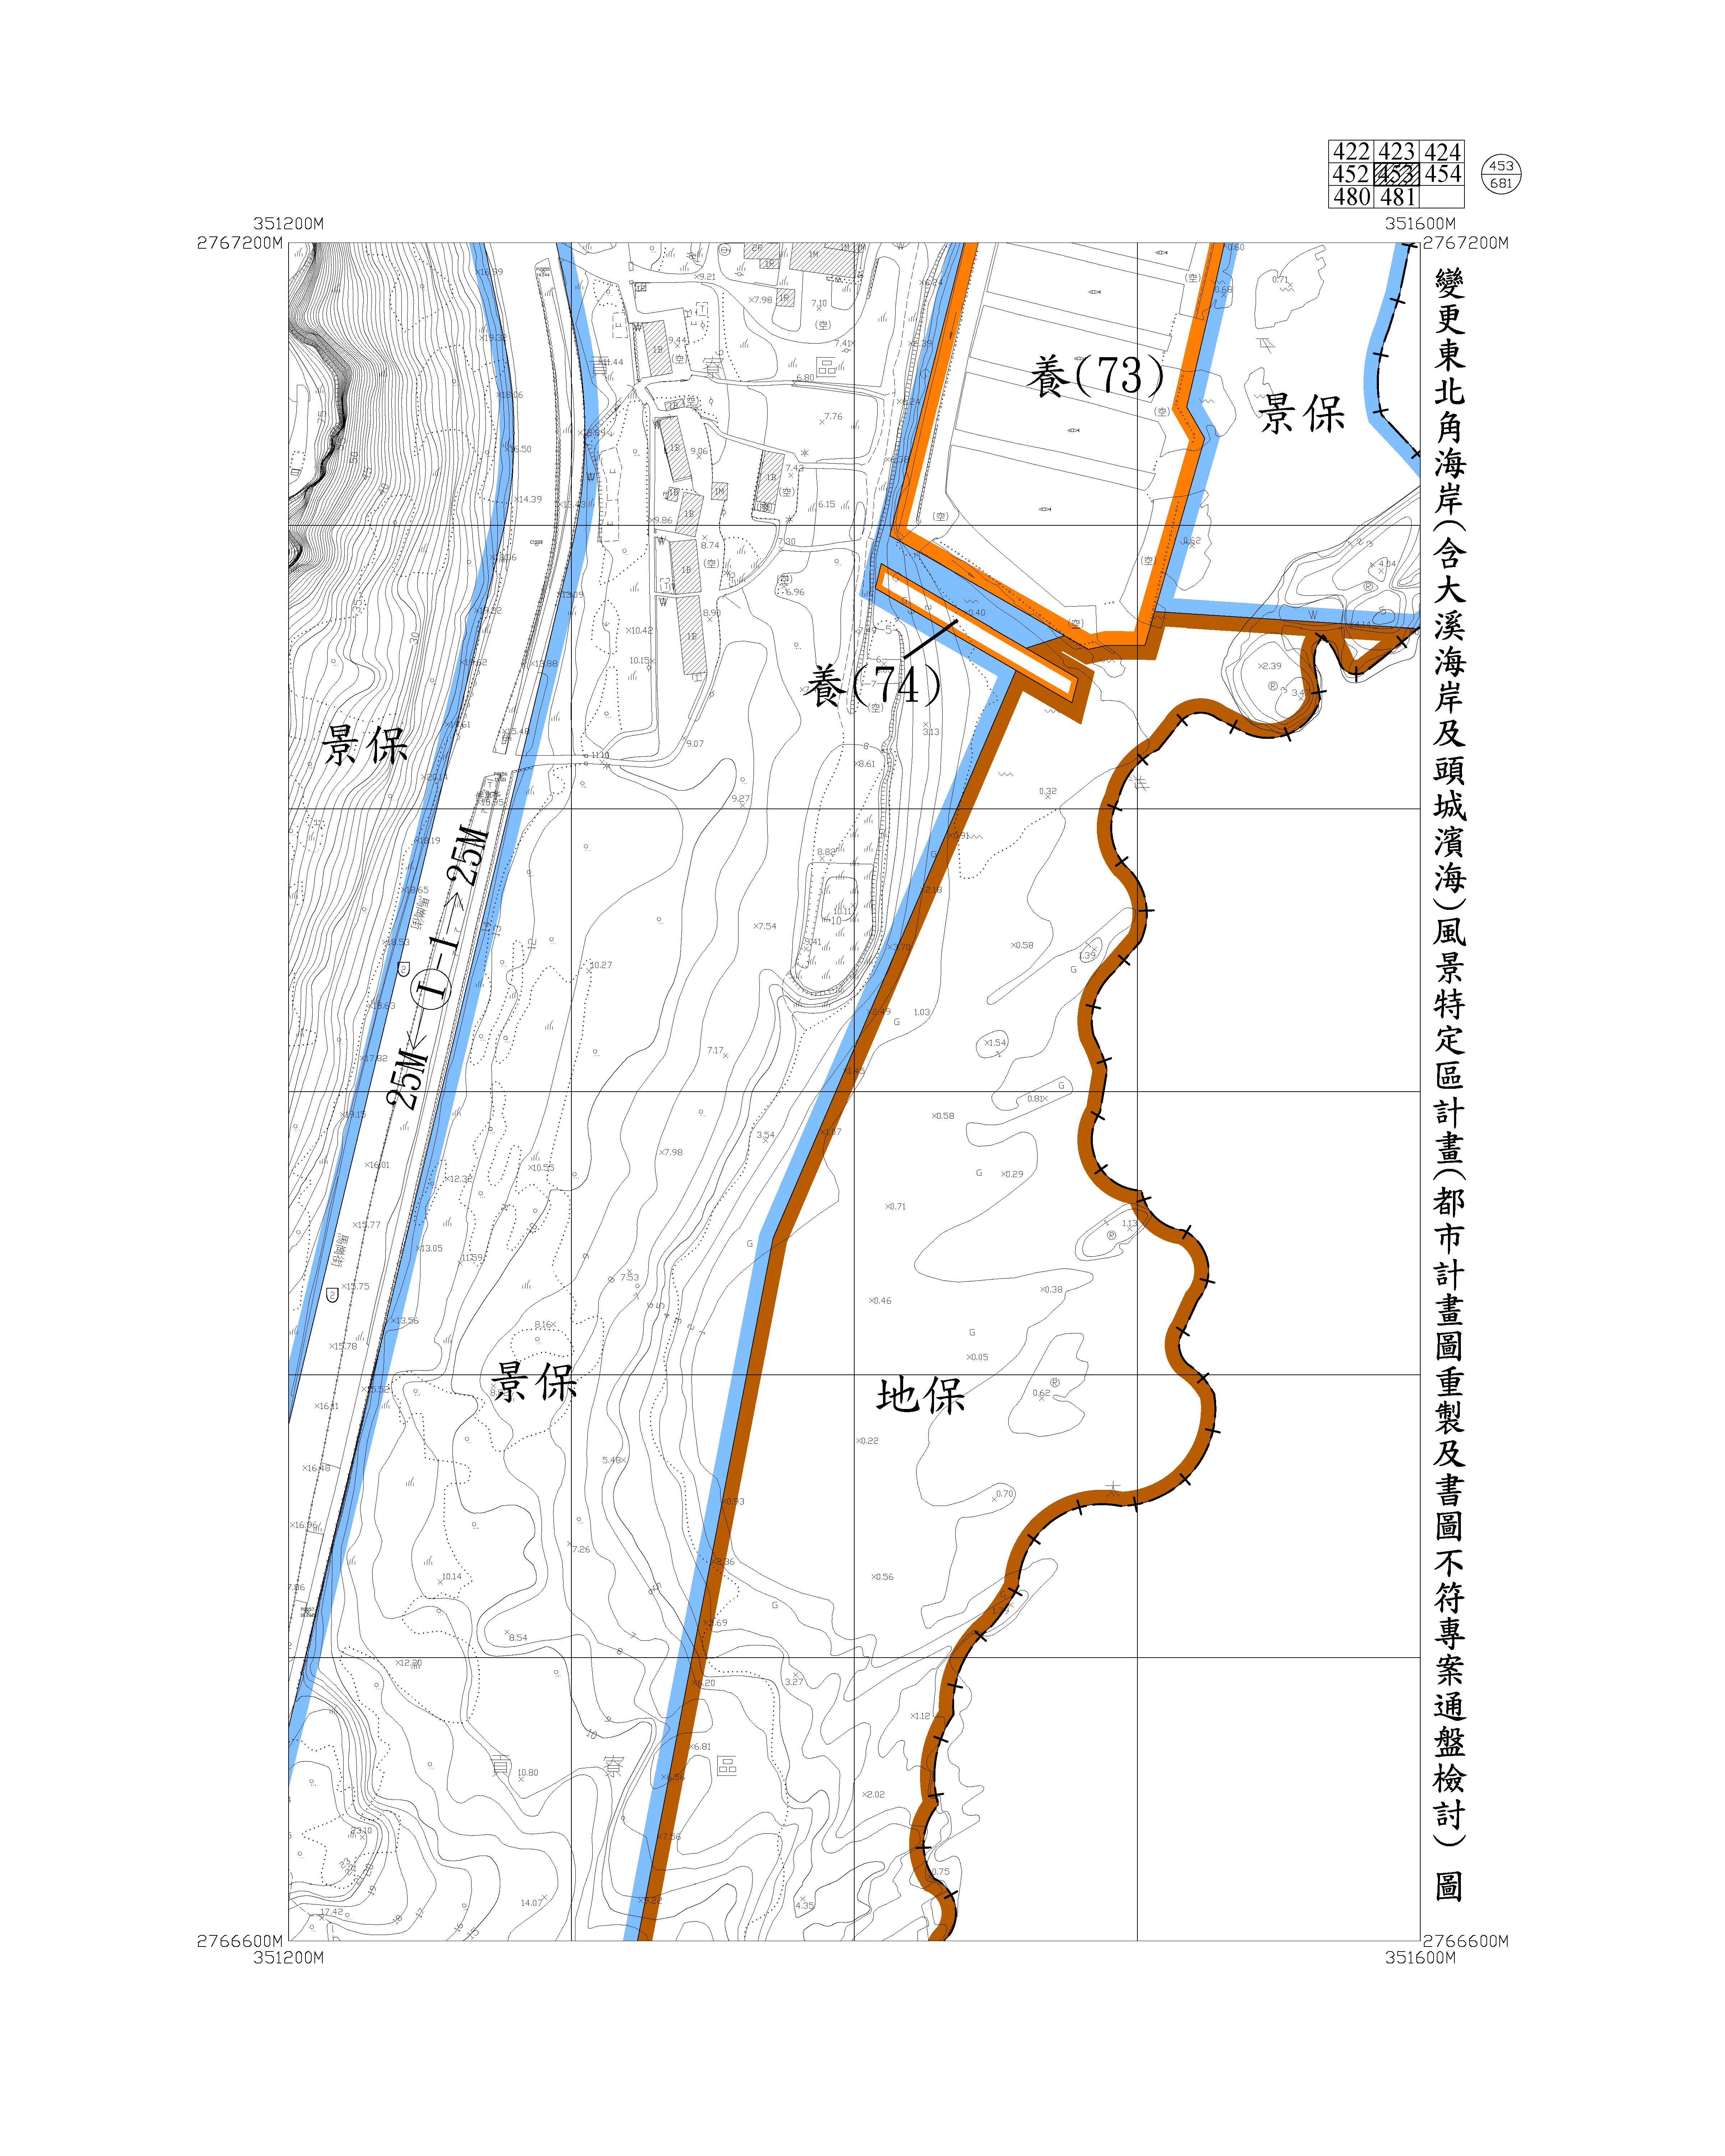 含大溪海岸及頭城濱海都市計畫圖重製及書圖不符專案通盤檢討圖資462